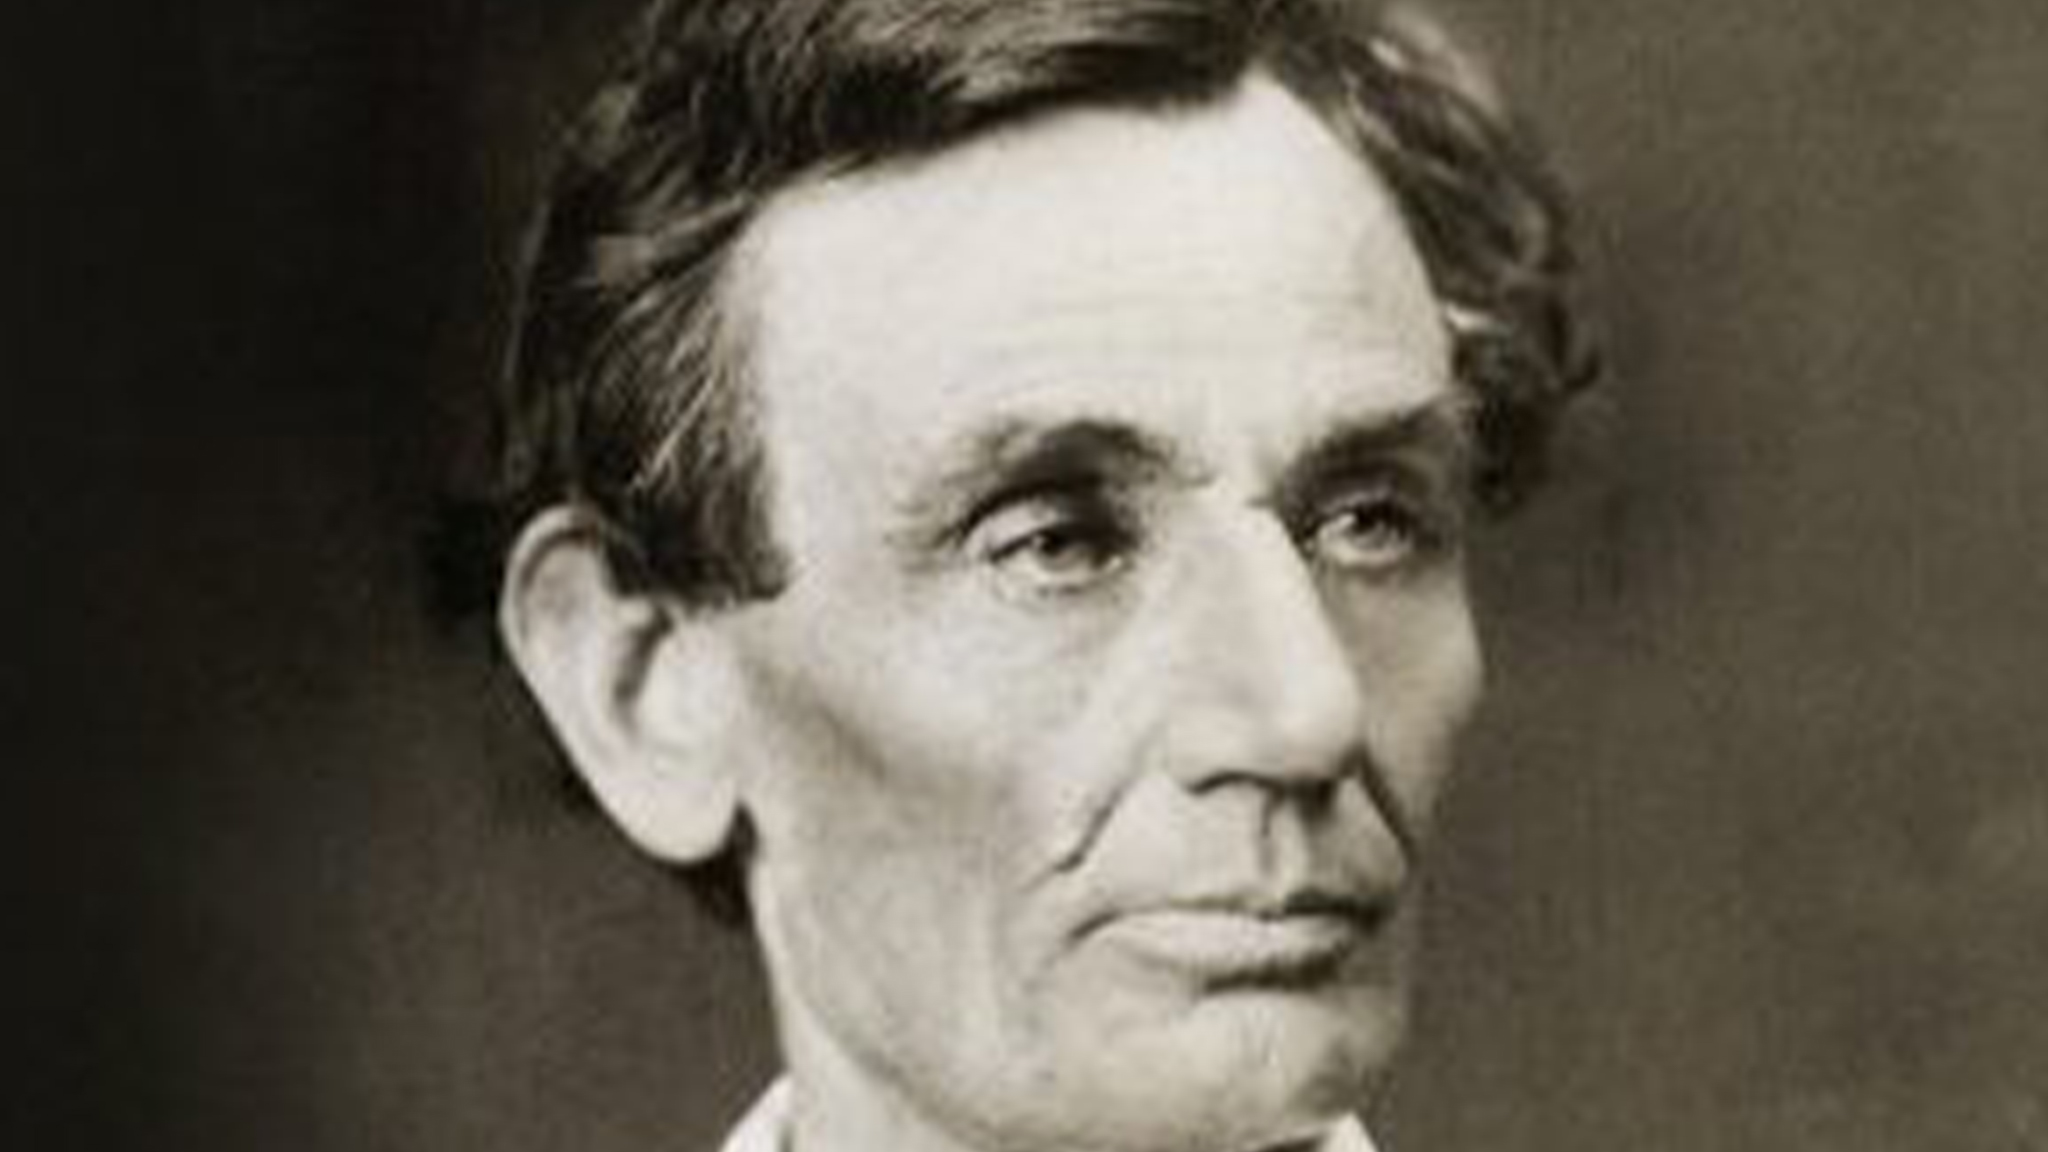 Explore More Abraham Lincoln Content